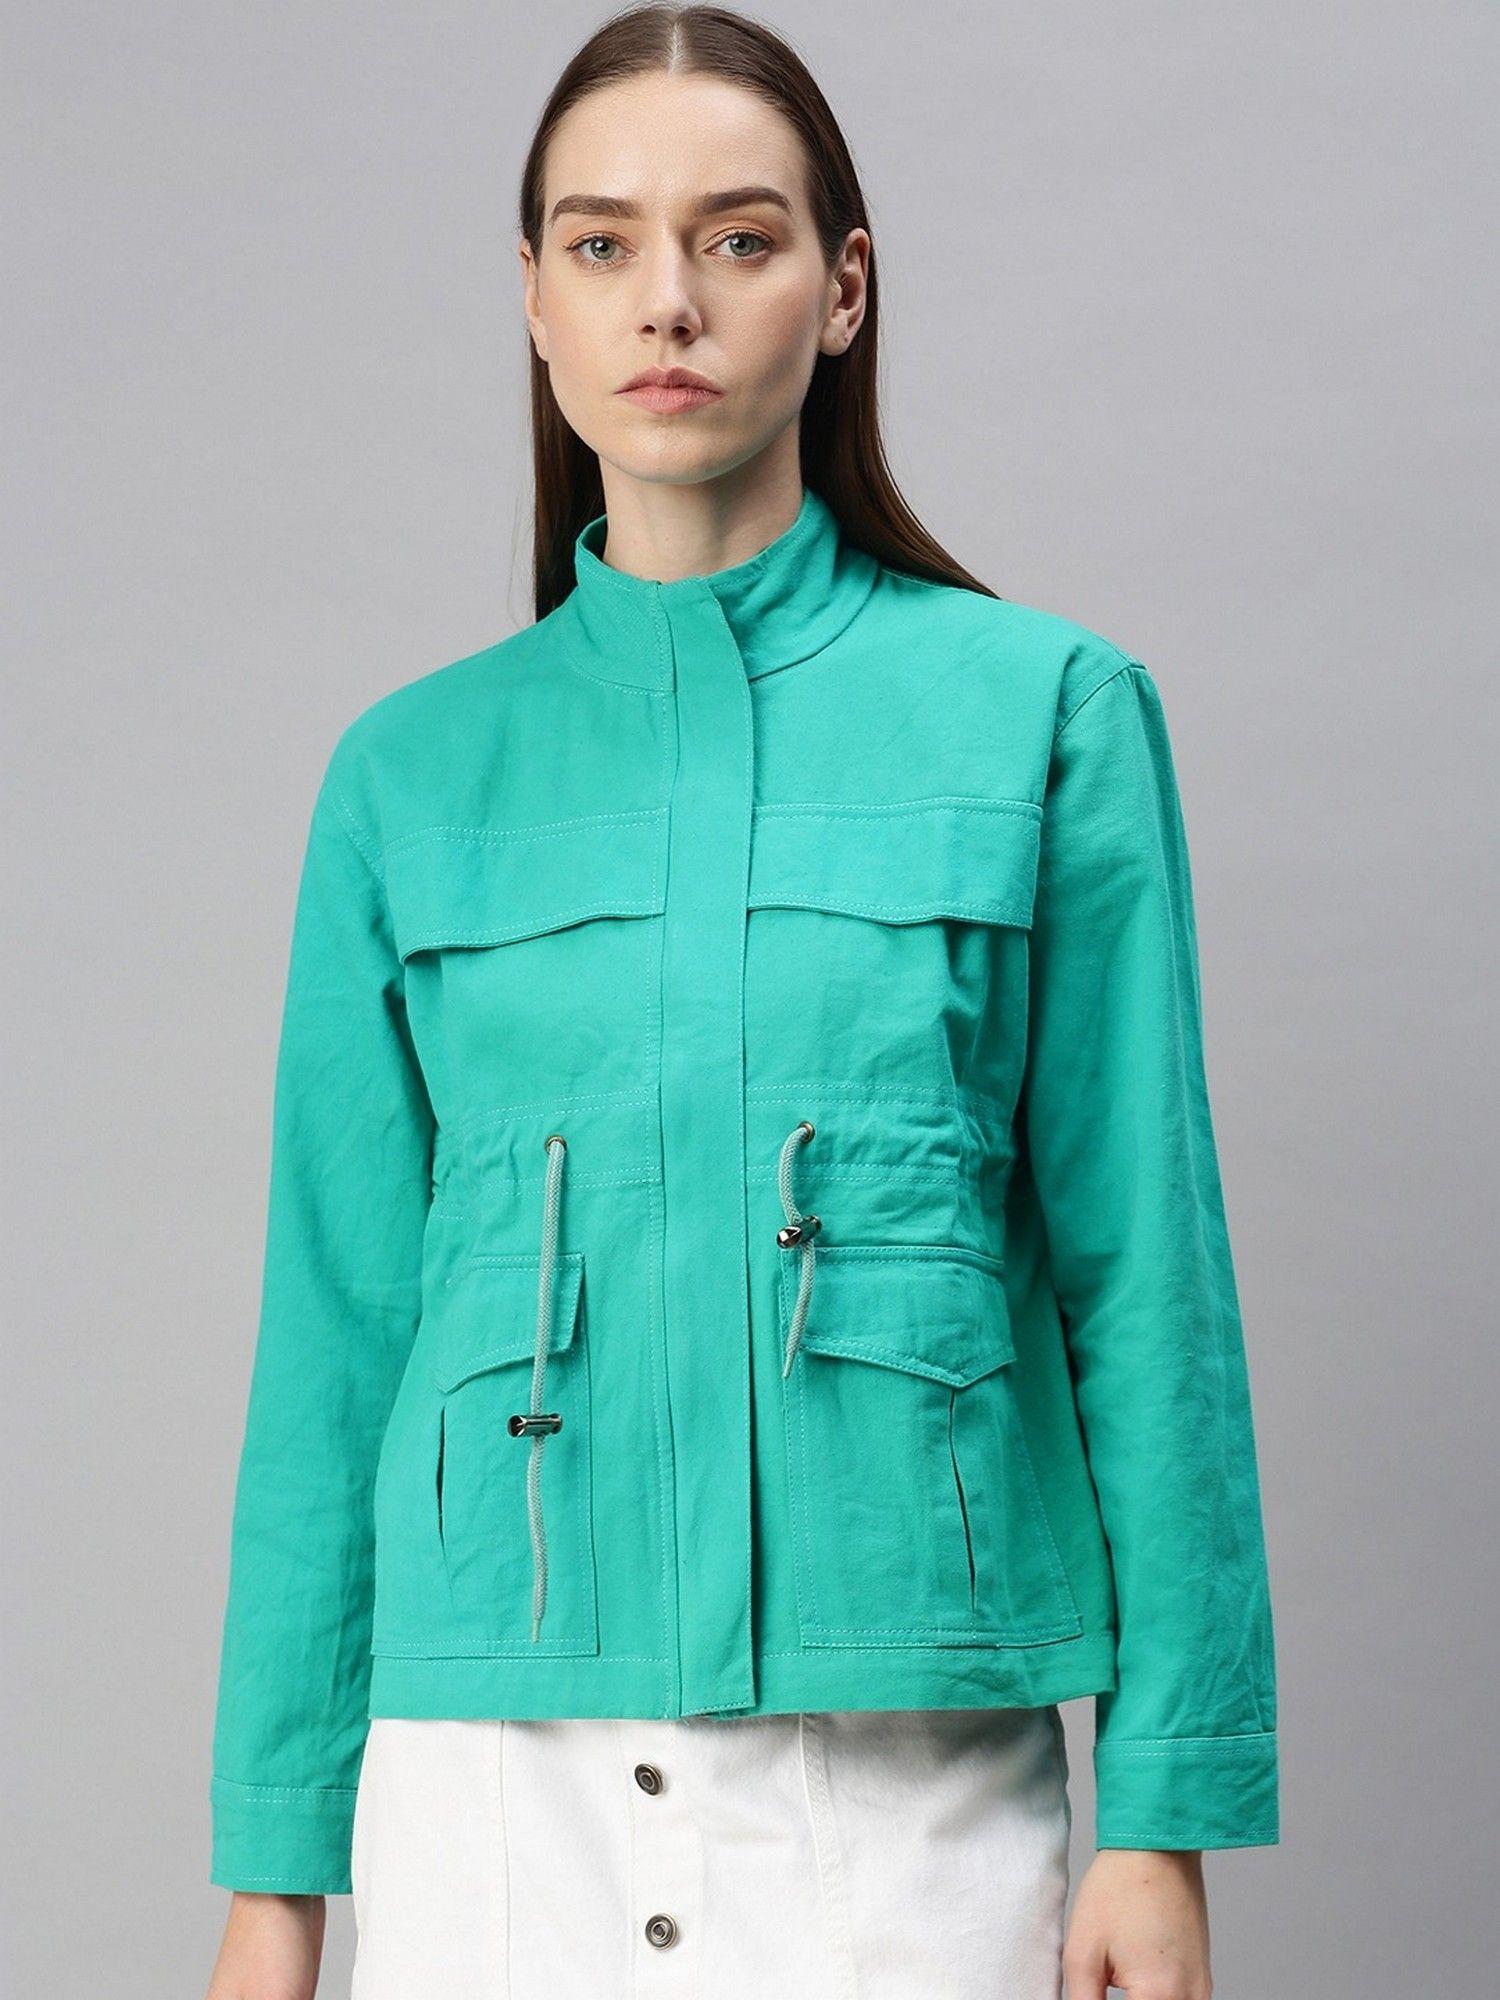 womens denim jacket turquoise